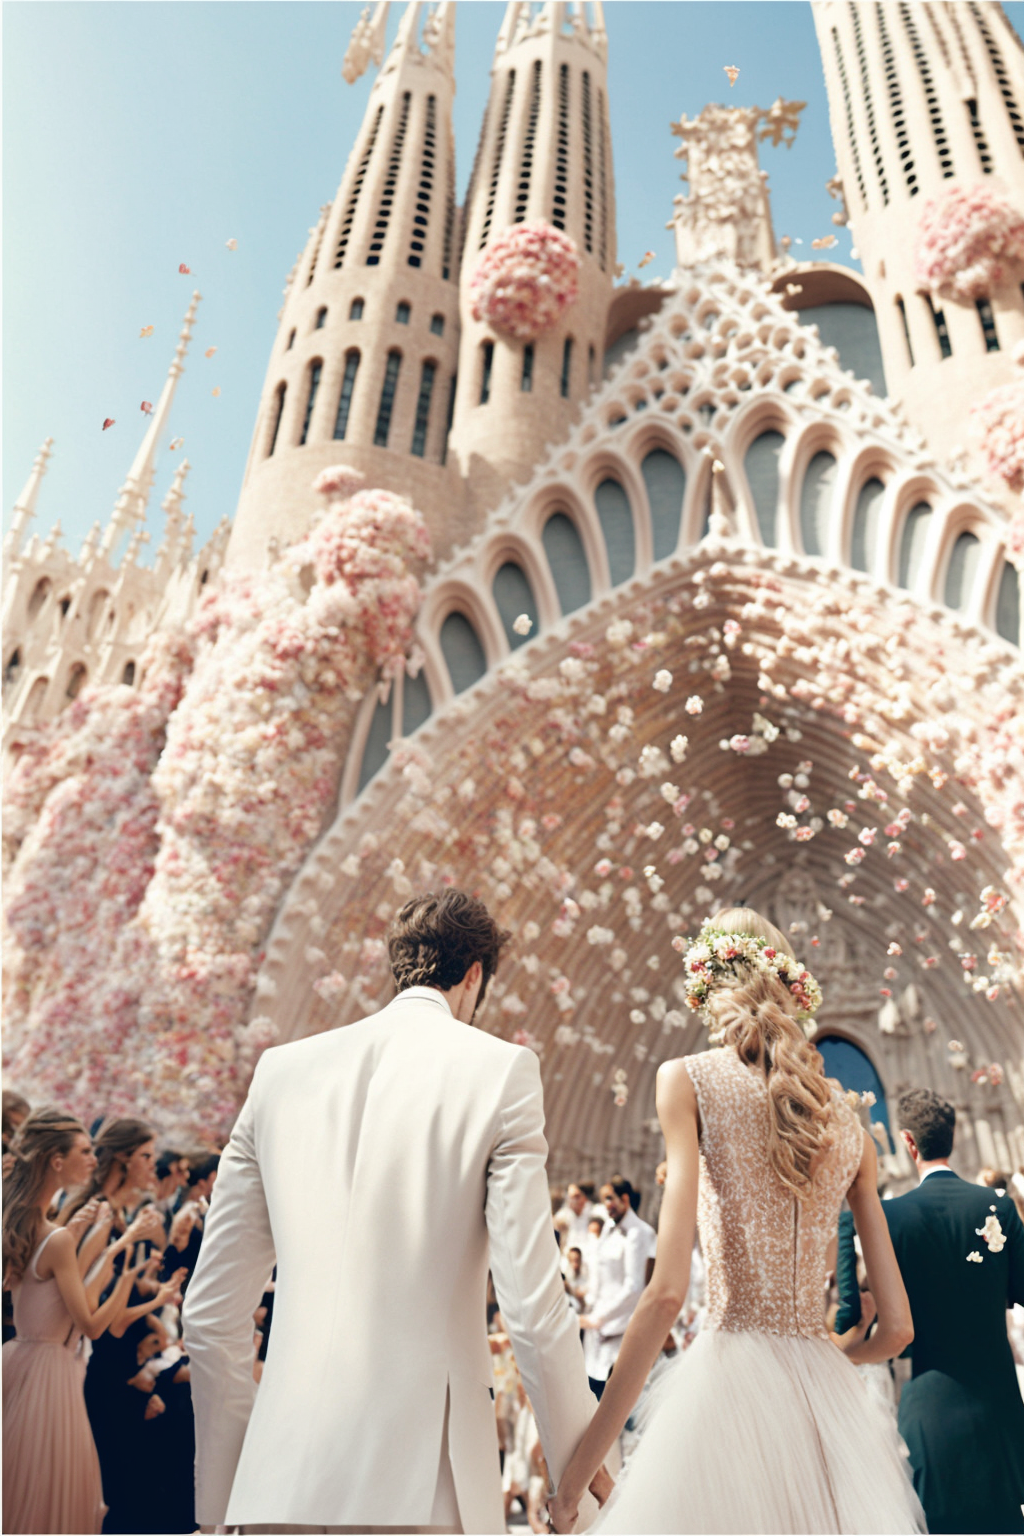 Barcelona destination wedding cinematography - luxury wedding